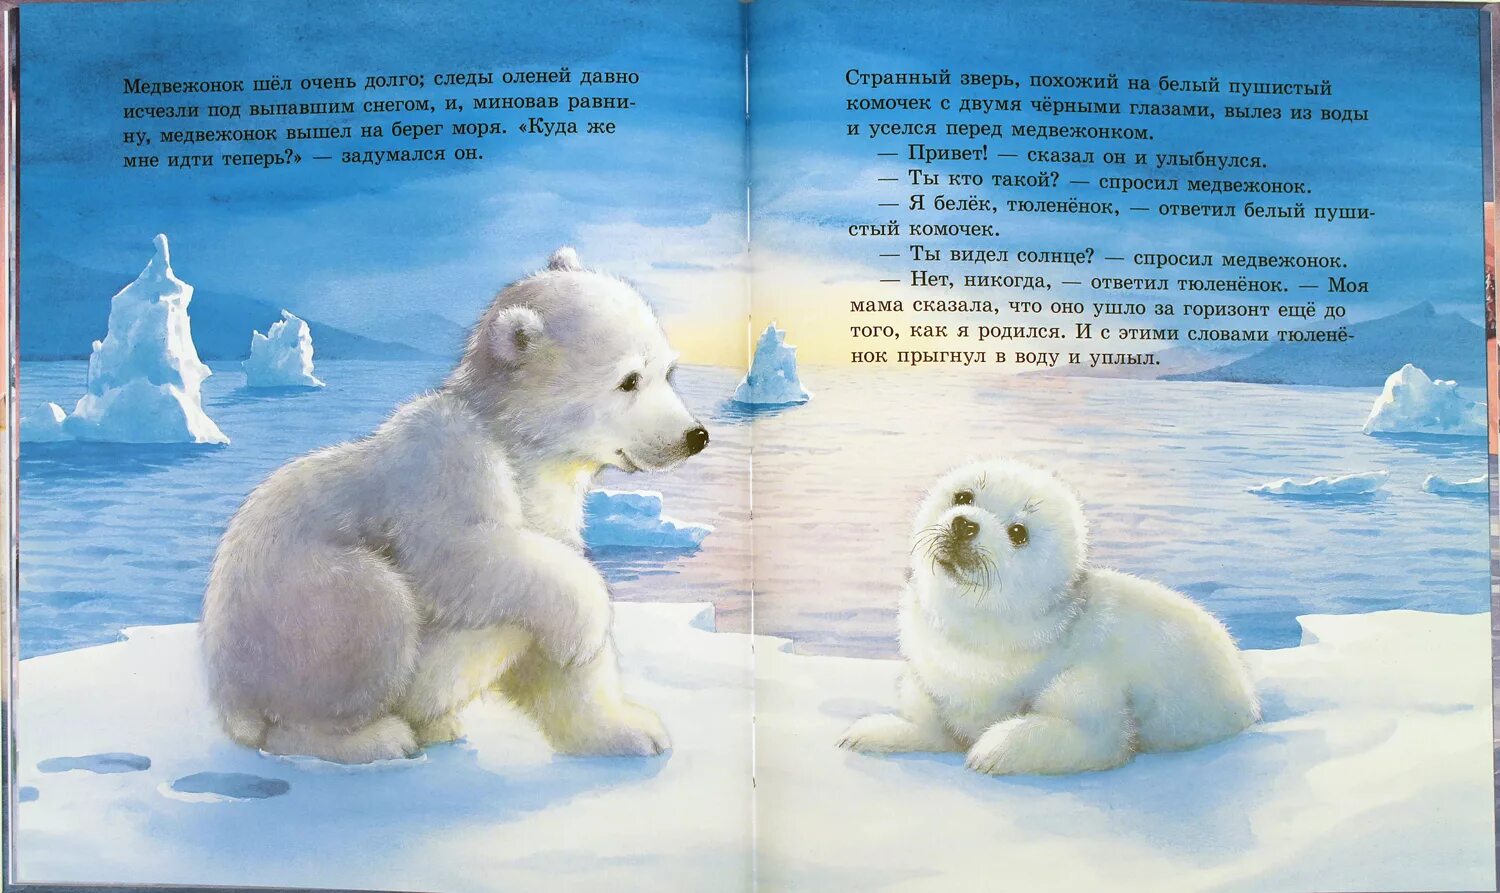 Сказка про белого медведя. Сказка про боевого медведя. Книги о белых медведях для детей. Сказка про белого медведя для детей. Читать про мишку